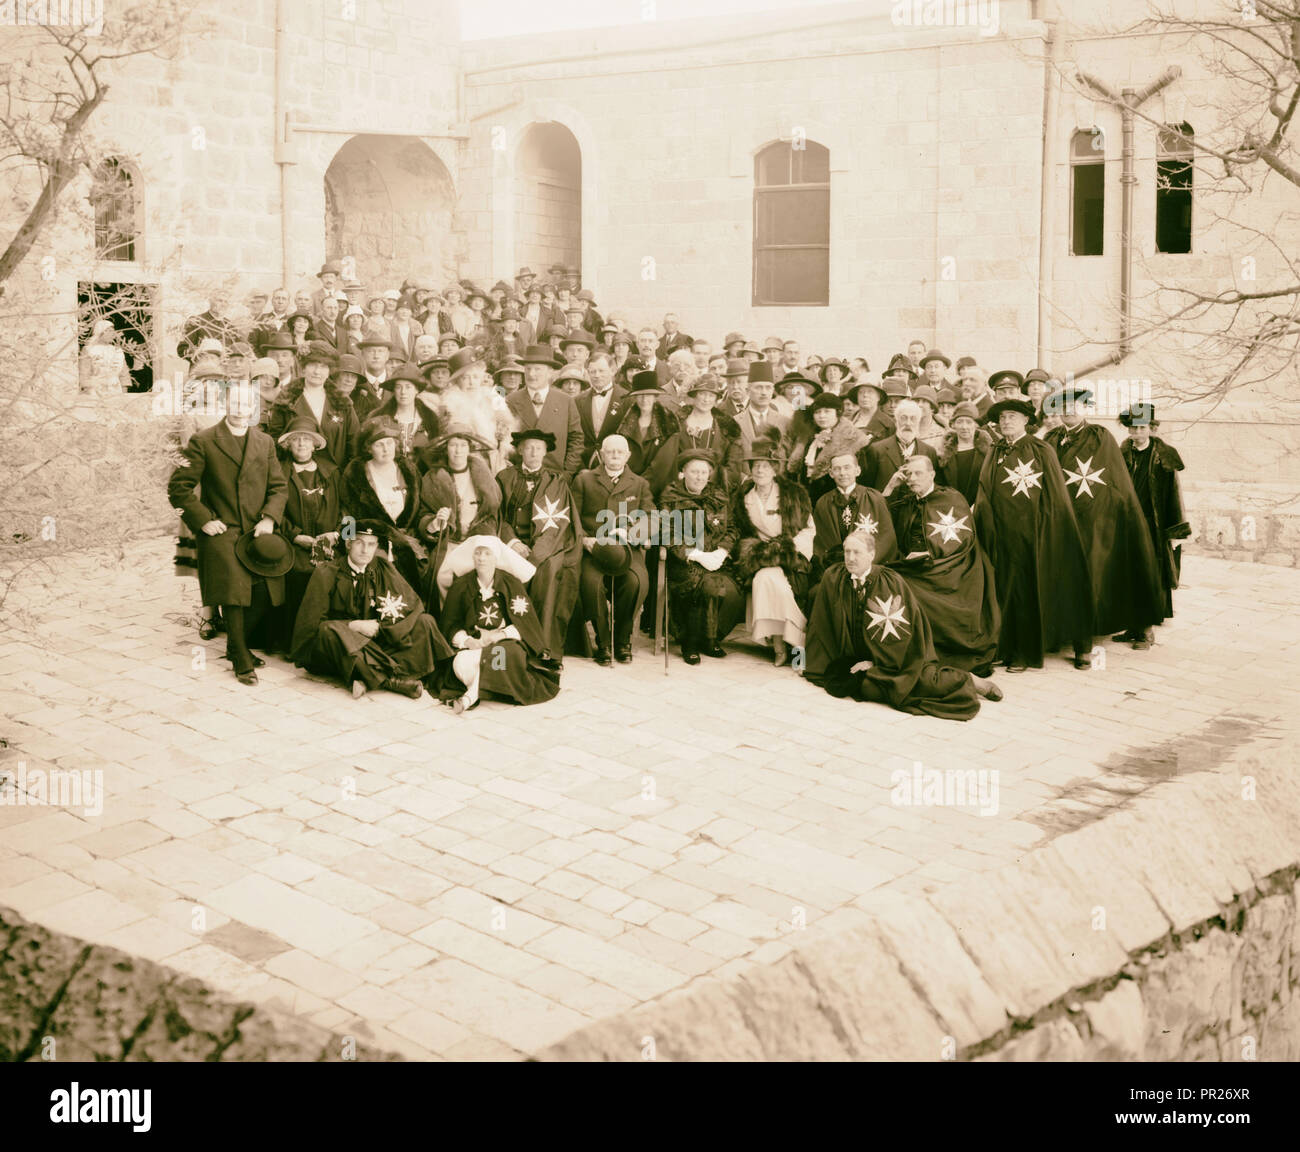 Männer und Frauen des Ordens von St. John bei der anwendungsweg Hospital, Jerusalem. Vielleicht St. John in Sheikh Jarrah nördlich von Jerusalem. 1898 Stockfoto